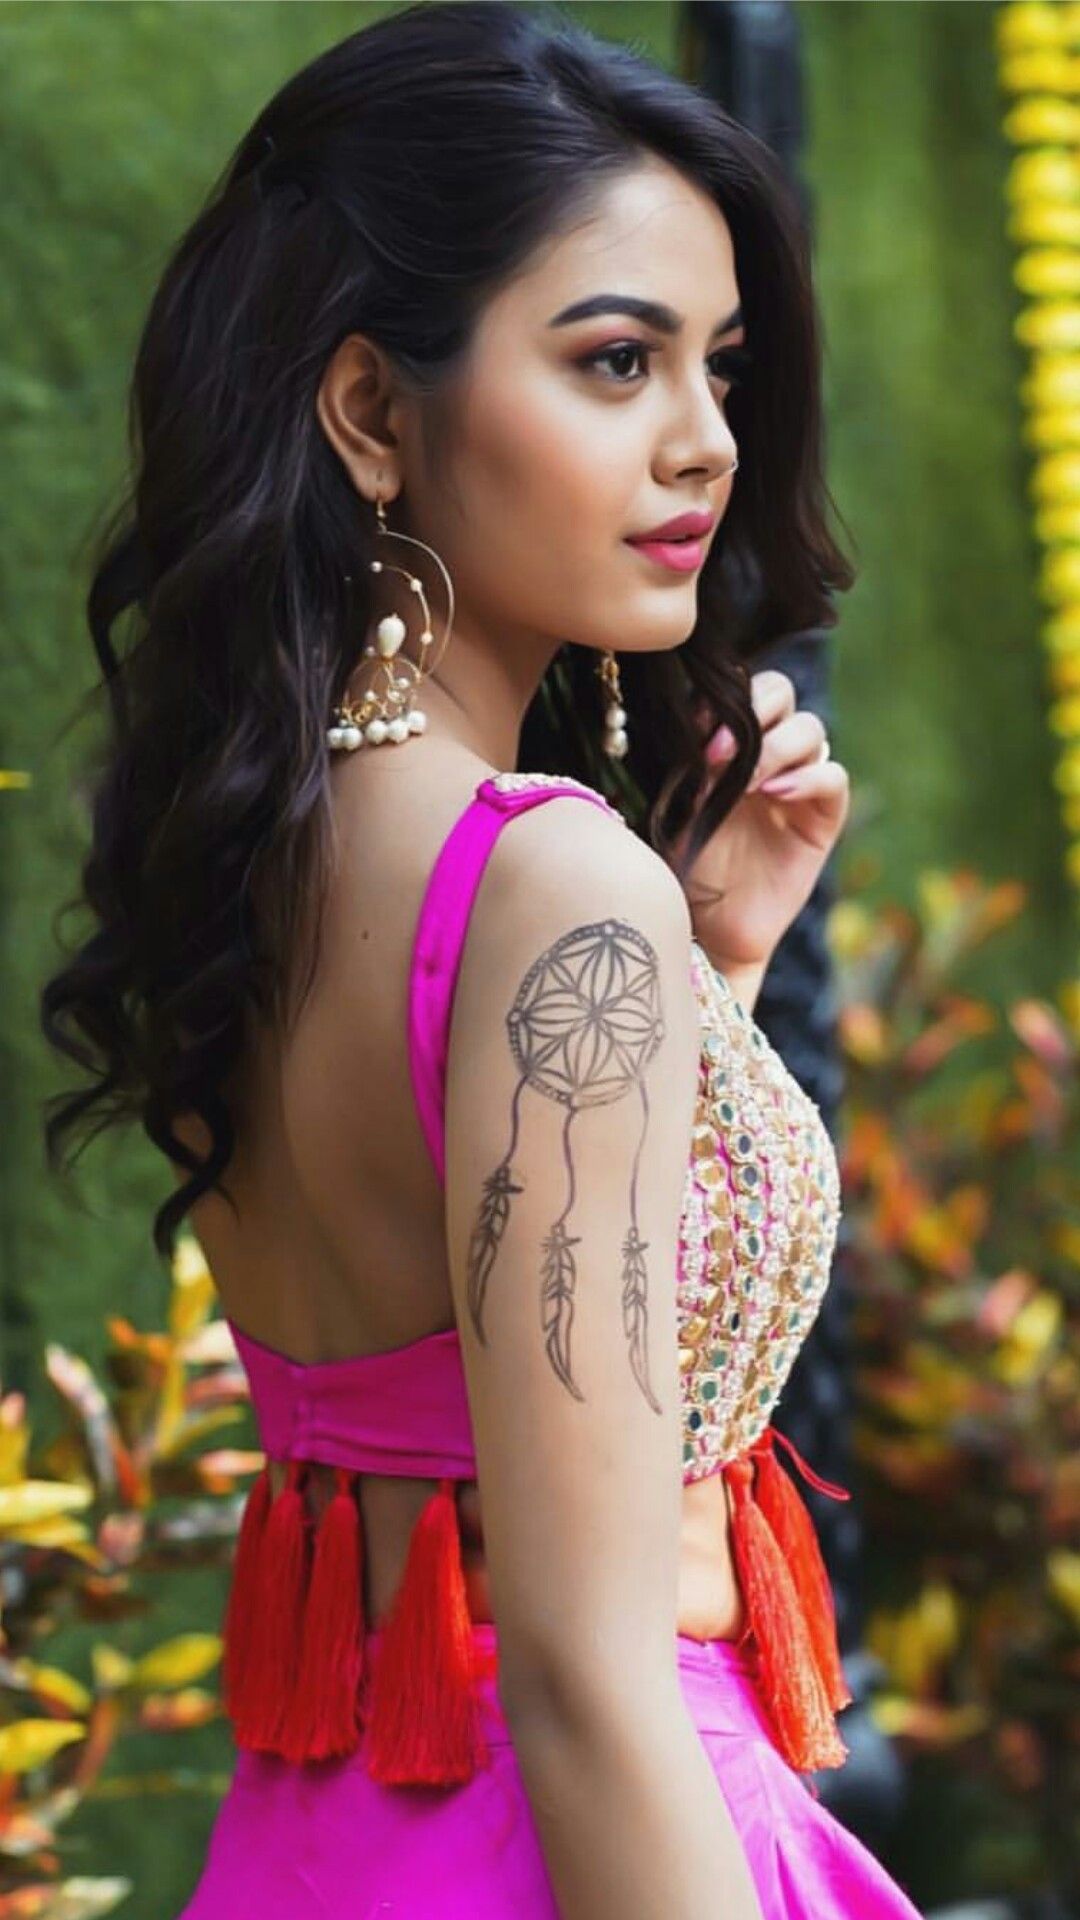 Priyal Mahajan ideas. beautiful girl indian, beautiful women naturally, beautiful girl face